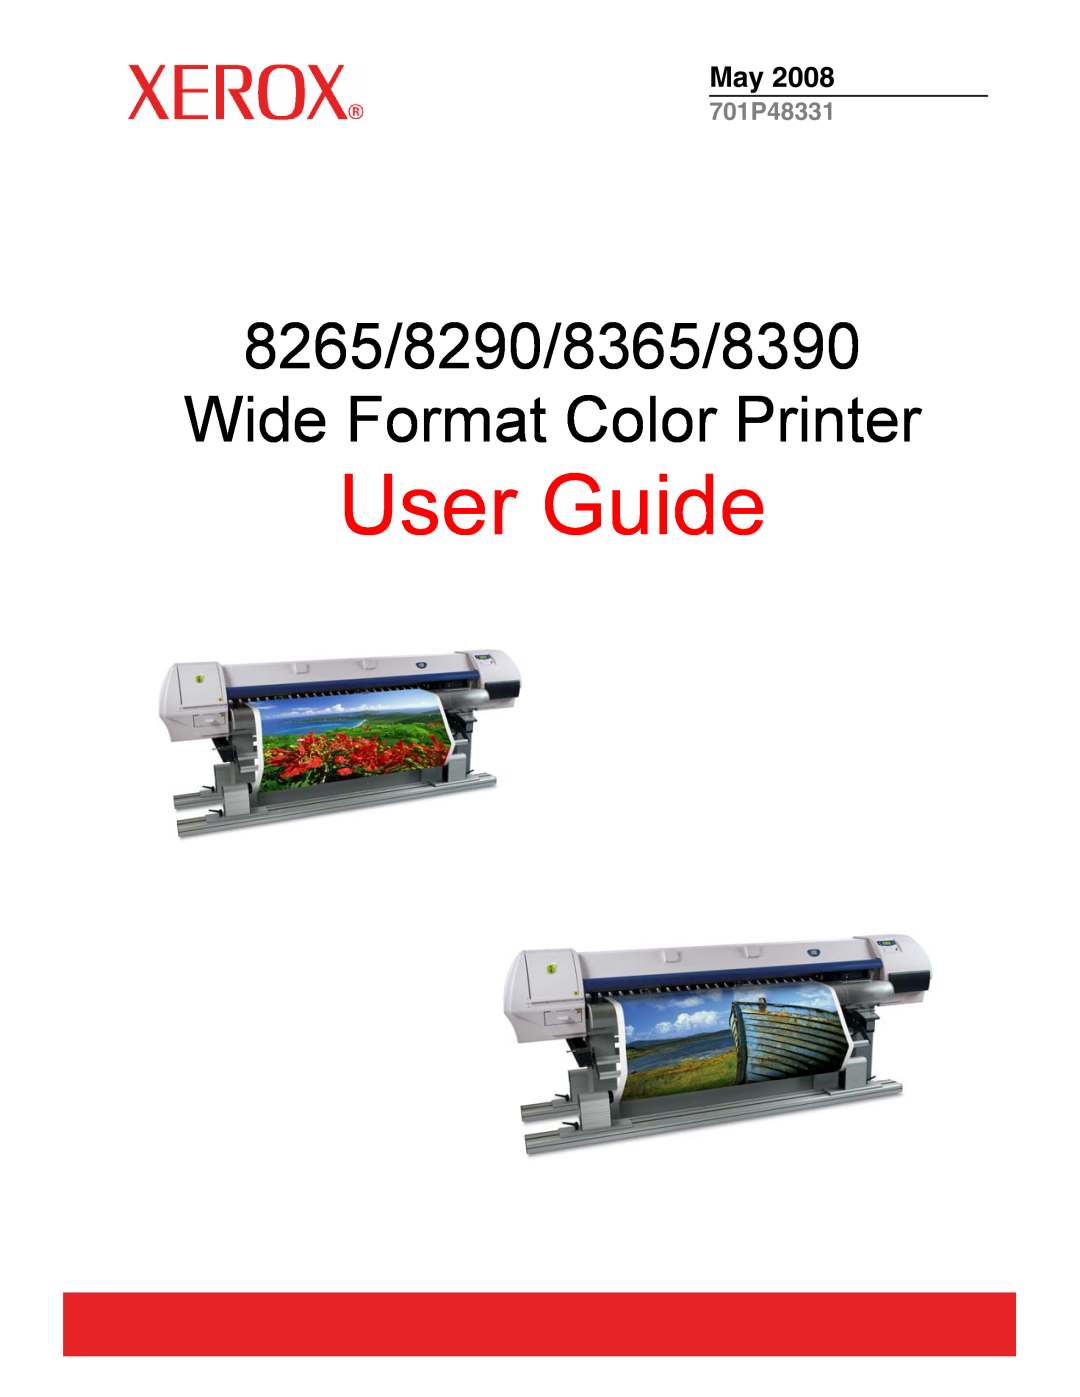 Xerox manual User Guide, 8265/8290/8365/8390 Wide Format Color Printer, 701P48331 